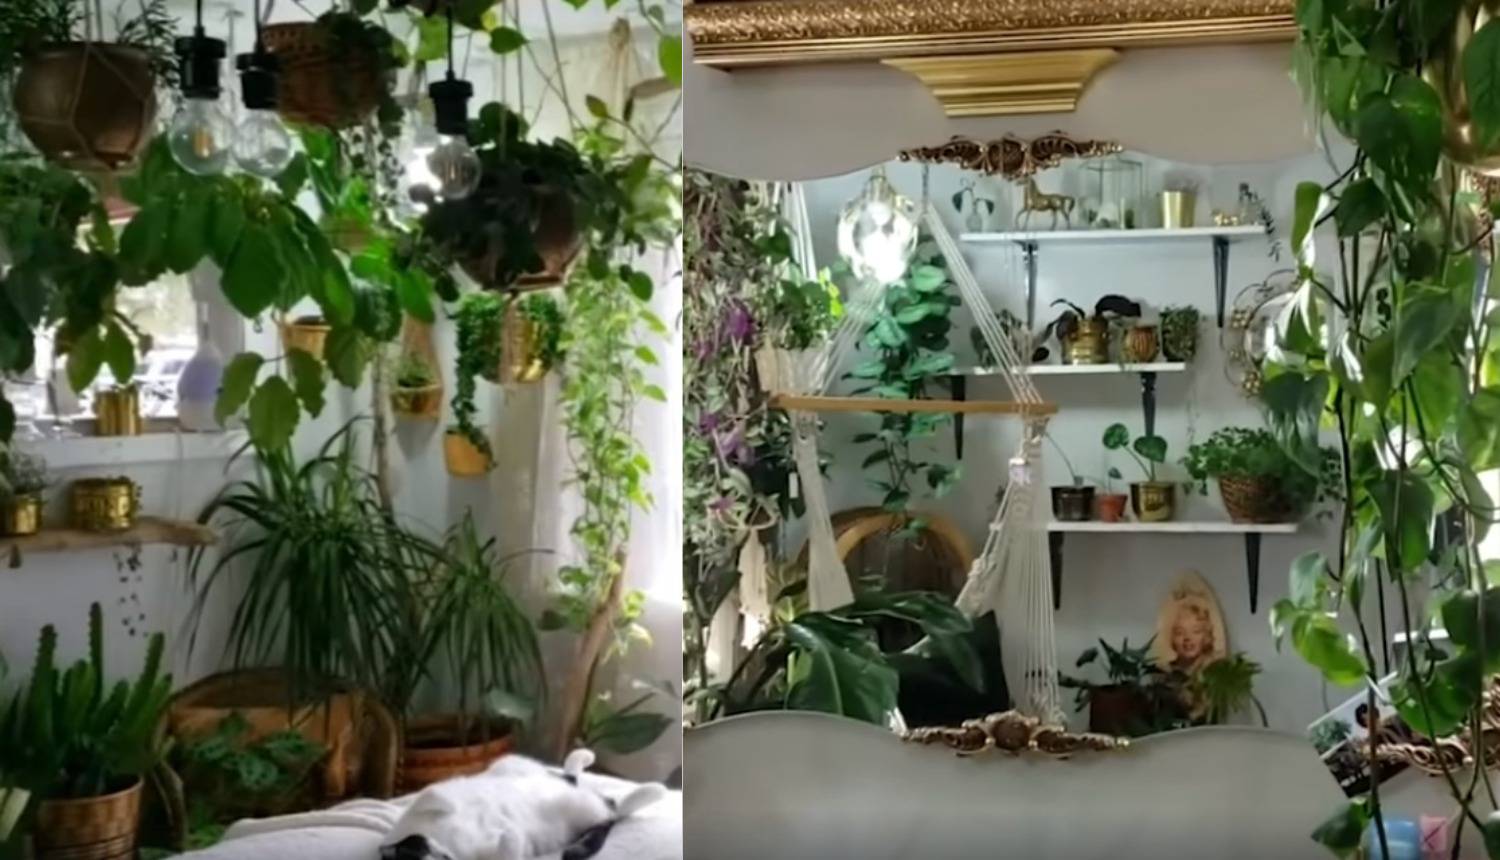 Mala džungla: Ovi ljudi zaista vole brinuti i živjeti s biljkama